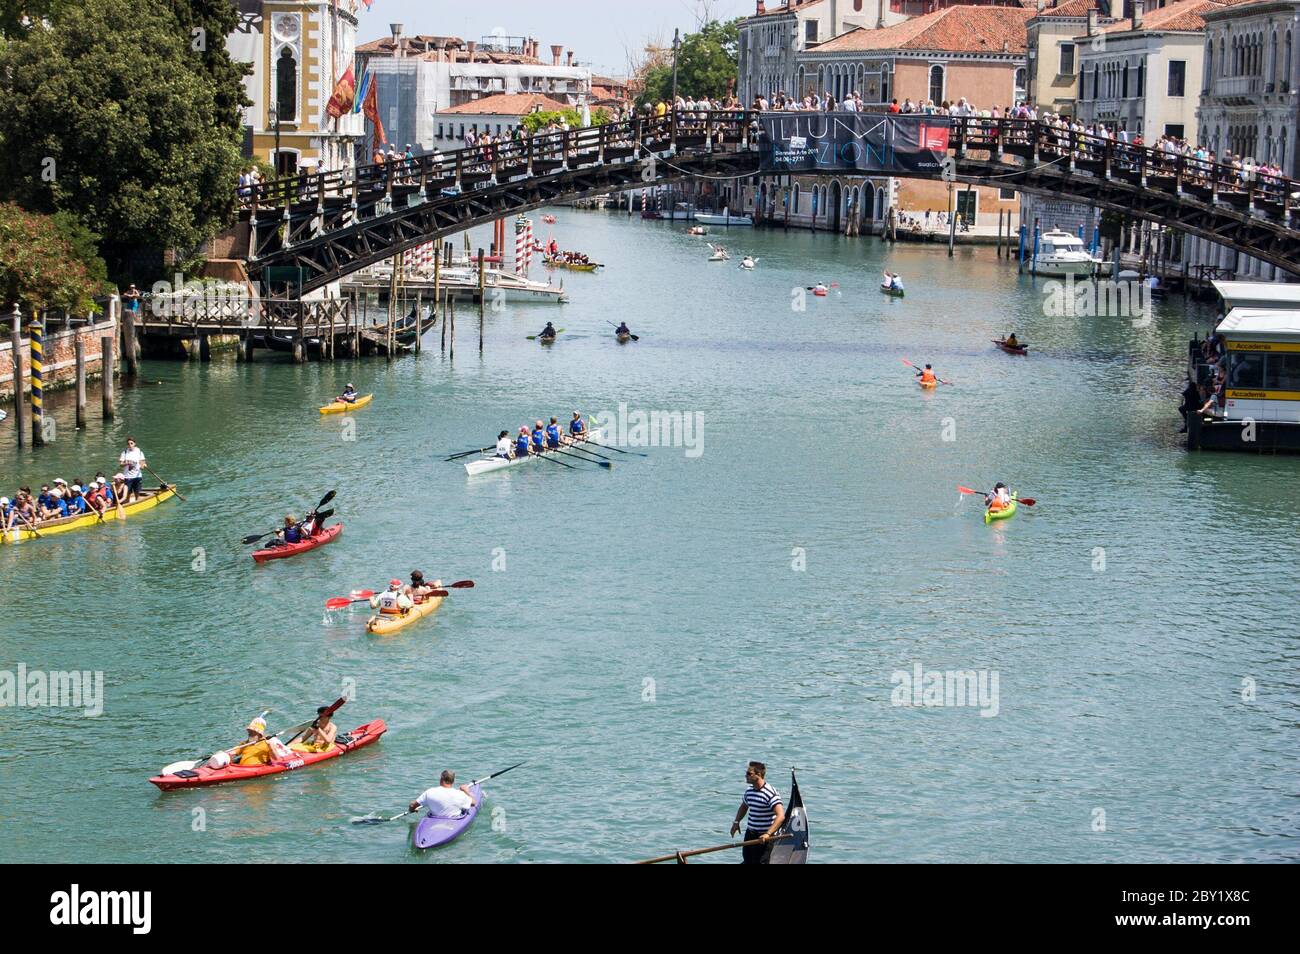 Venezia, Italia - 12 giugno 2011: Il Canal Grande è pieno di piccole imbarcazioni, mentre sportivi e donne partecipano all'annuale regata Vogalonga di Venezia. Foto Stock